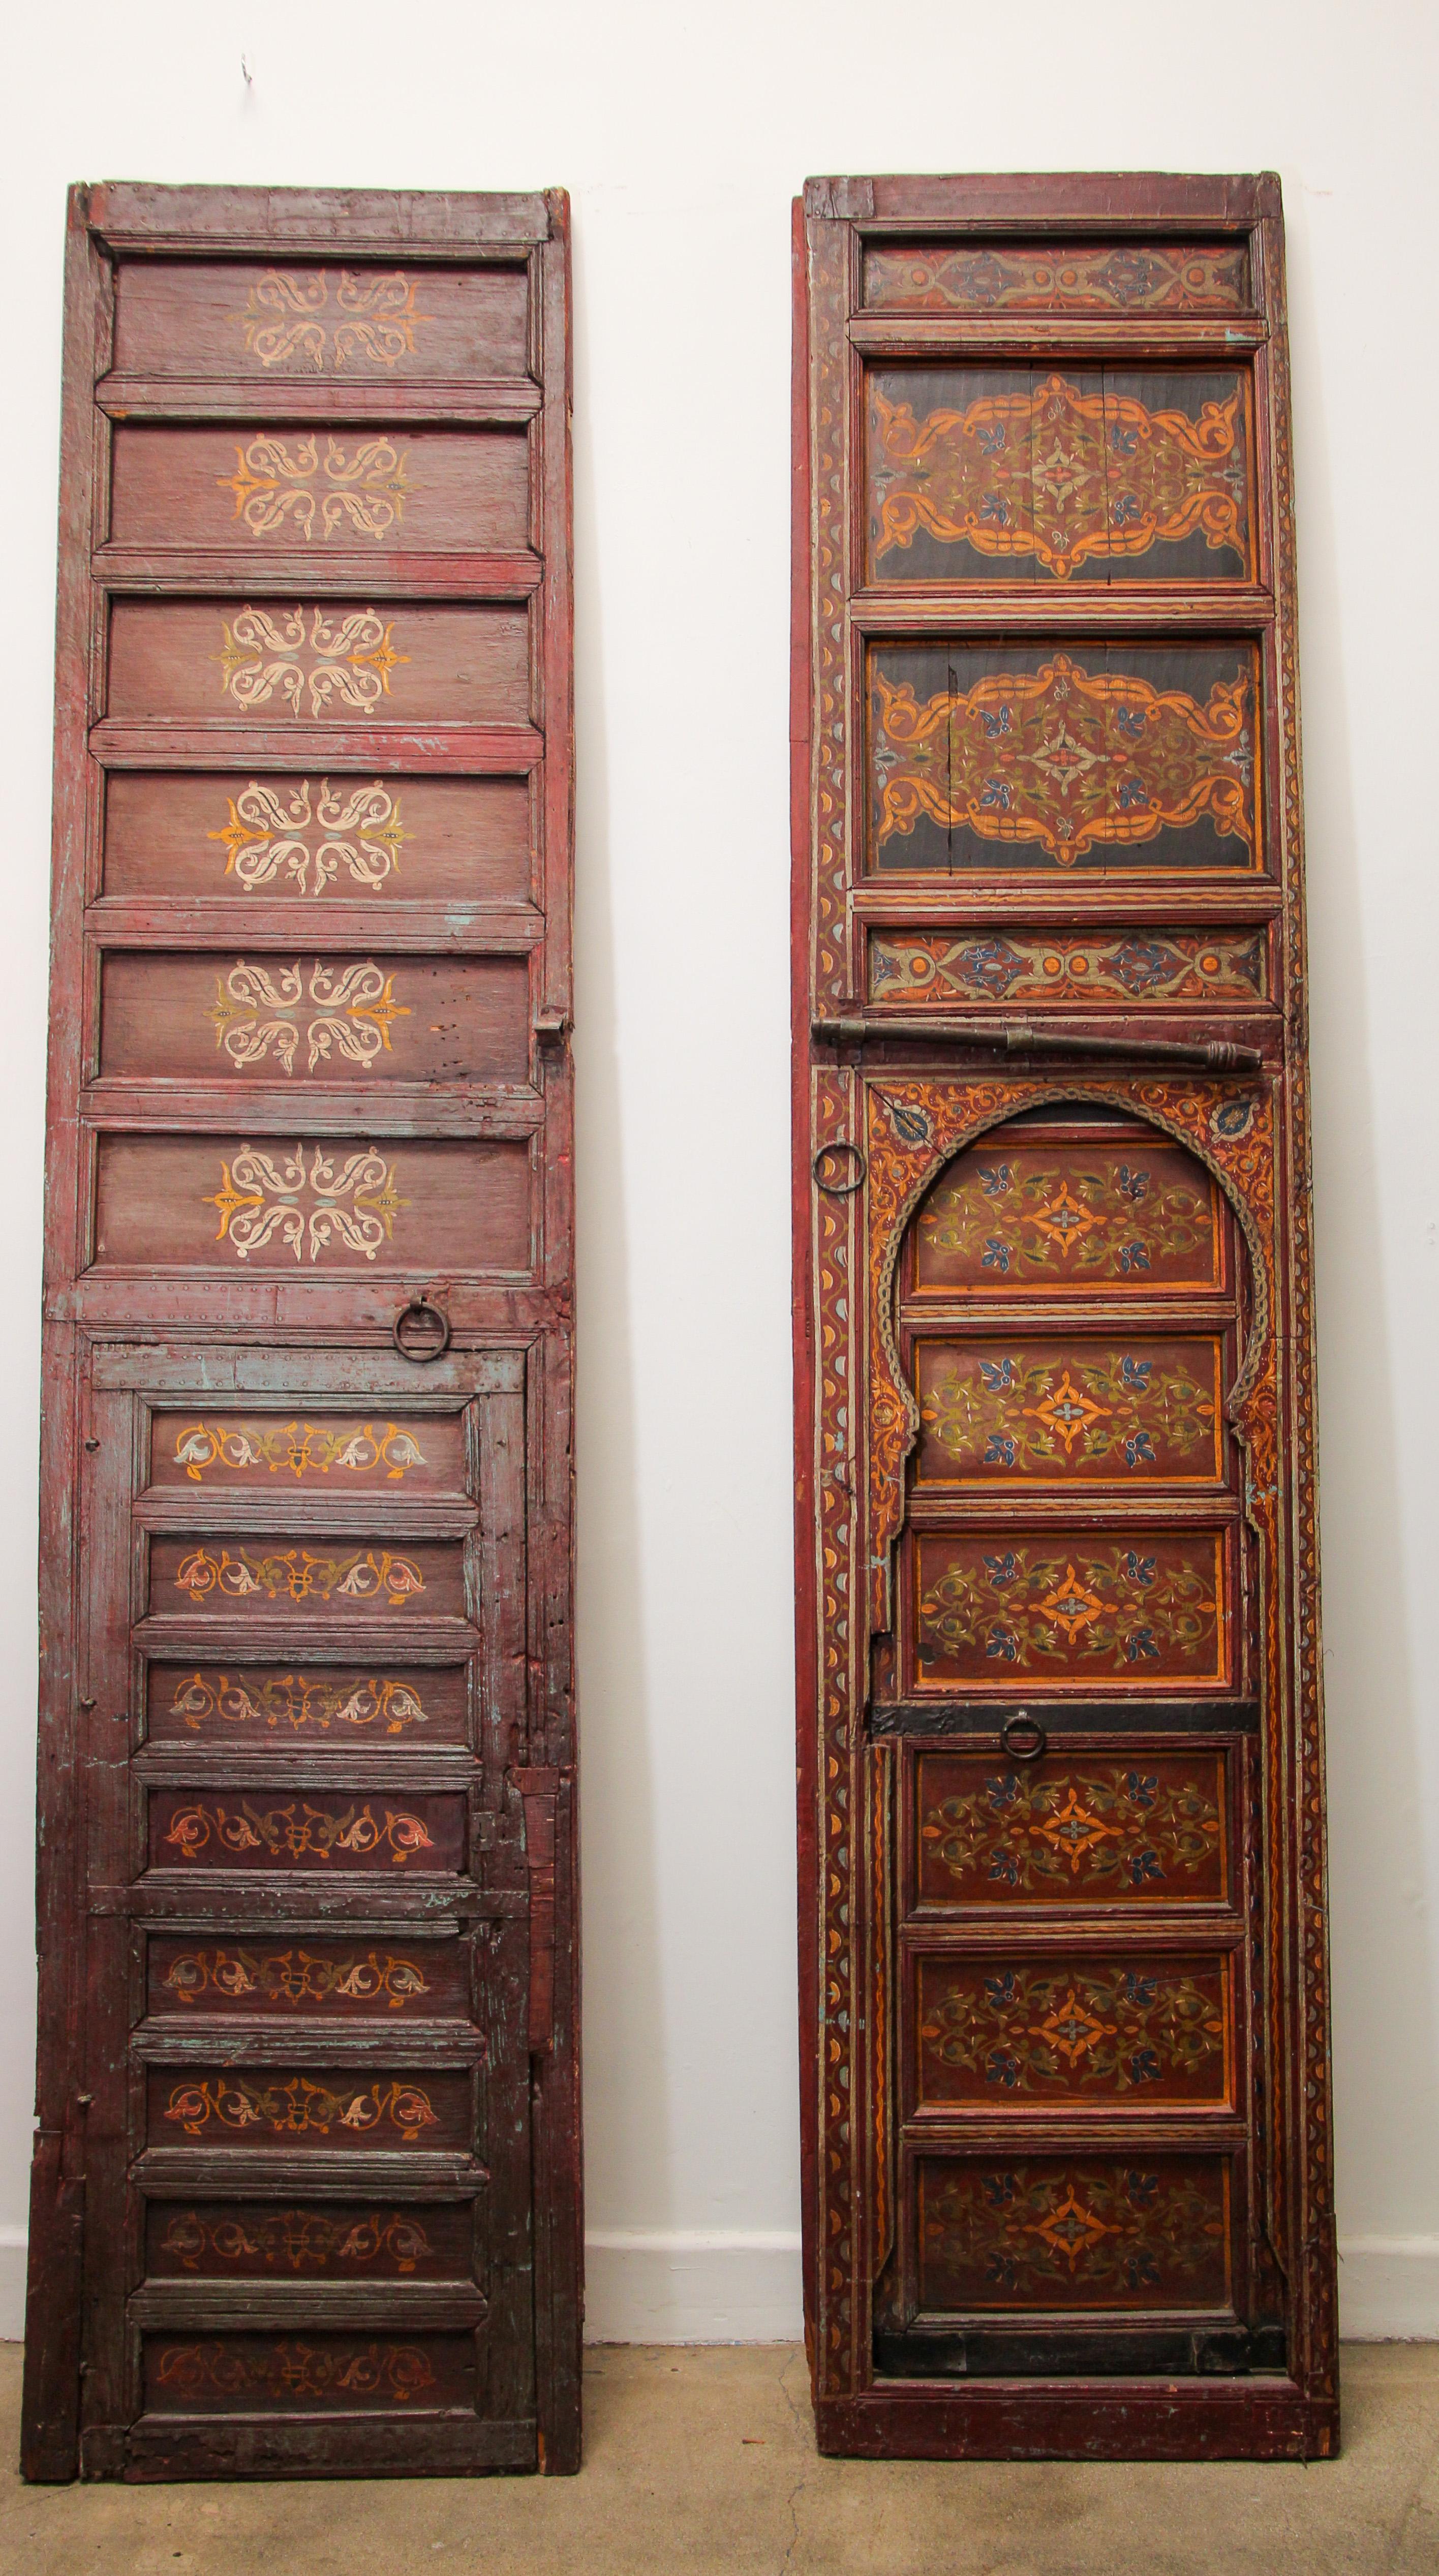 Marokkanische riesige antike Türen aus einem Ryad in Fez, erstaunliche handgemalte Kunstwerke.
Mehrfarbige geometrische maurische Muster in tiefem Rot, Grün und Gelb.
Marokkanische Türen und Möbel zeichnen sich vor allem durch die Verwendung